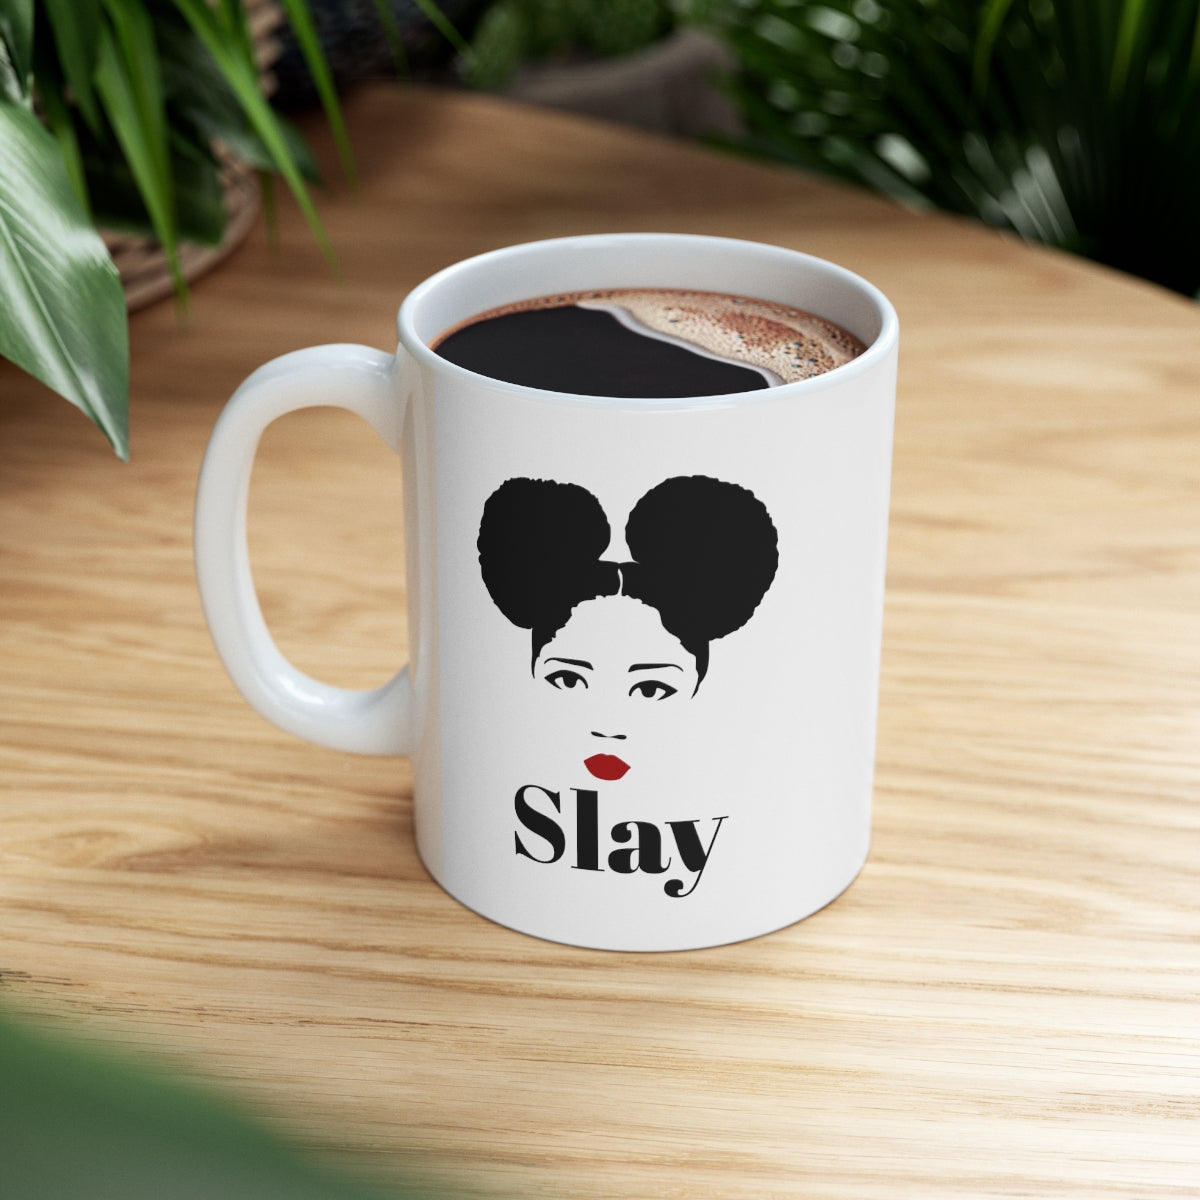 Slay Ceramic Mug 11oz